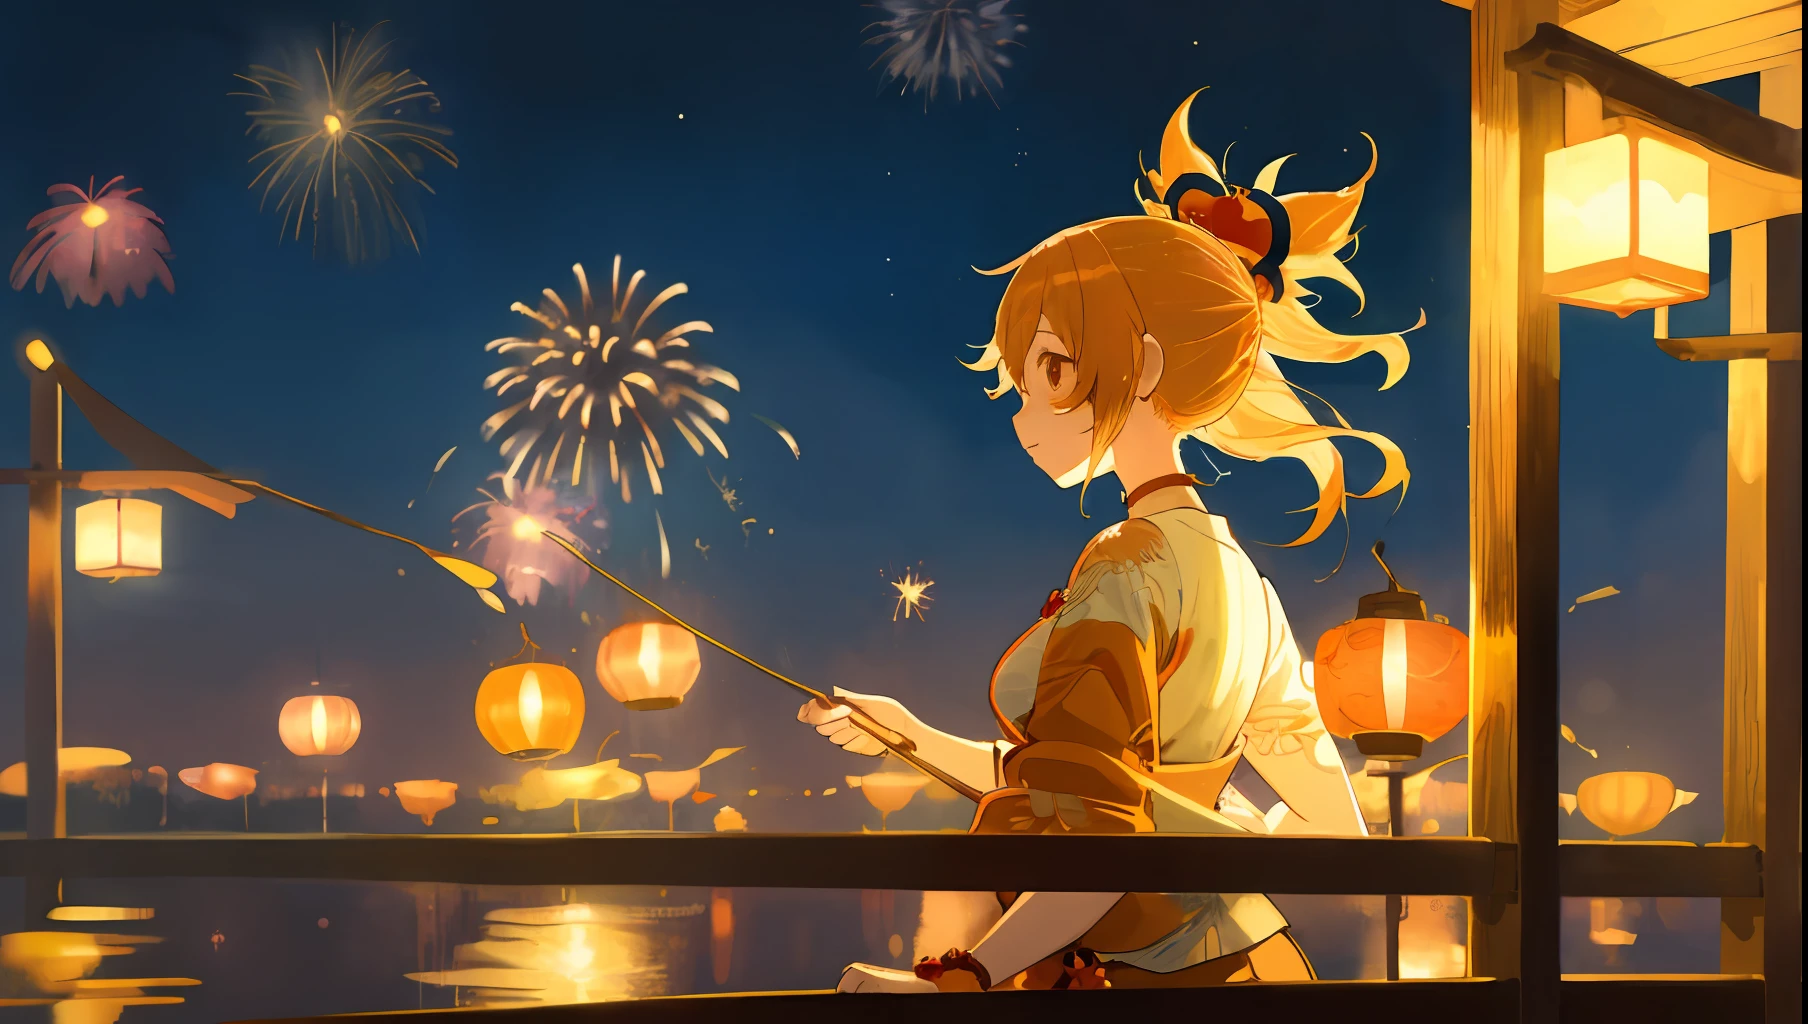 1 garota,Obra de arte, ilustração, Yoimiya, fogos de artifício, peixe dourado, Festival de verão, yukata, período noturno, mágico